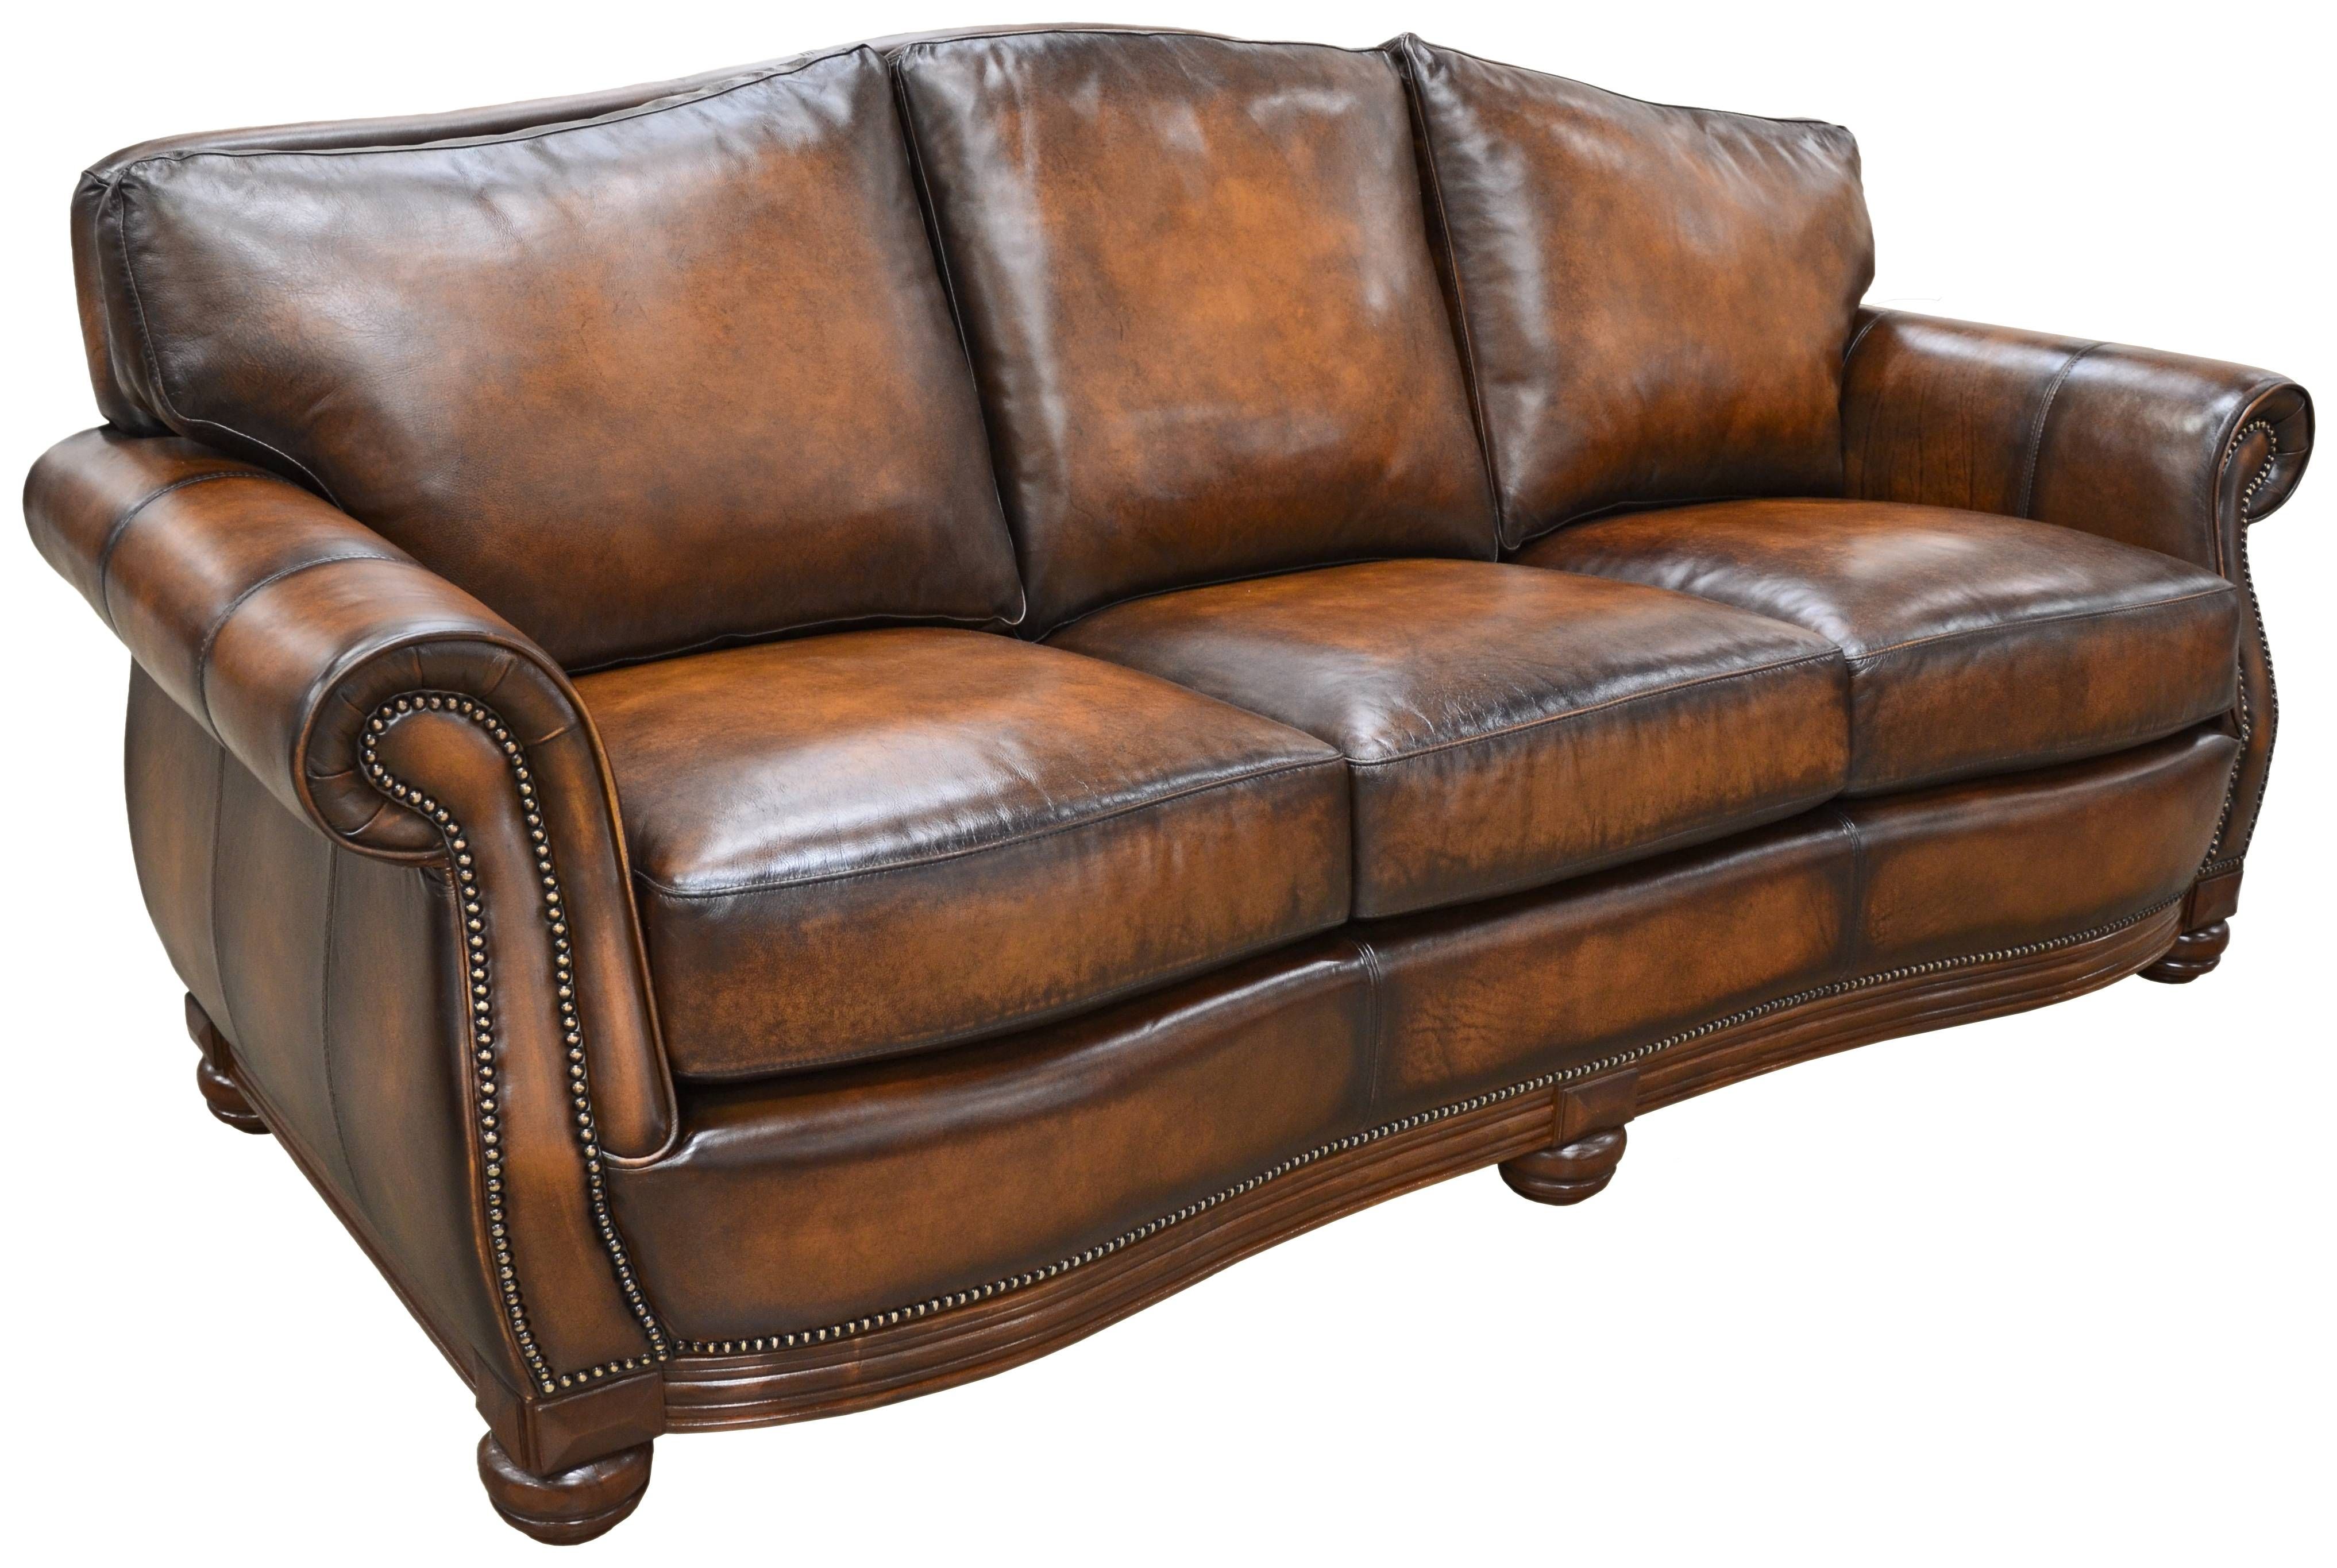 Quality Leather Sofa In Austin, Dallas, San Antonio & Houston Tx With Leather Sofas (View 11 of 30)